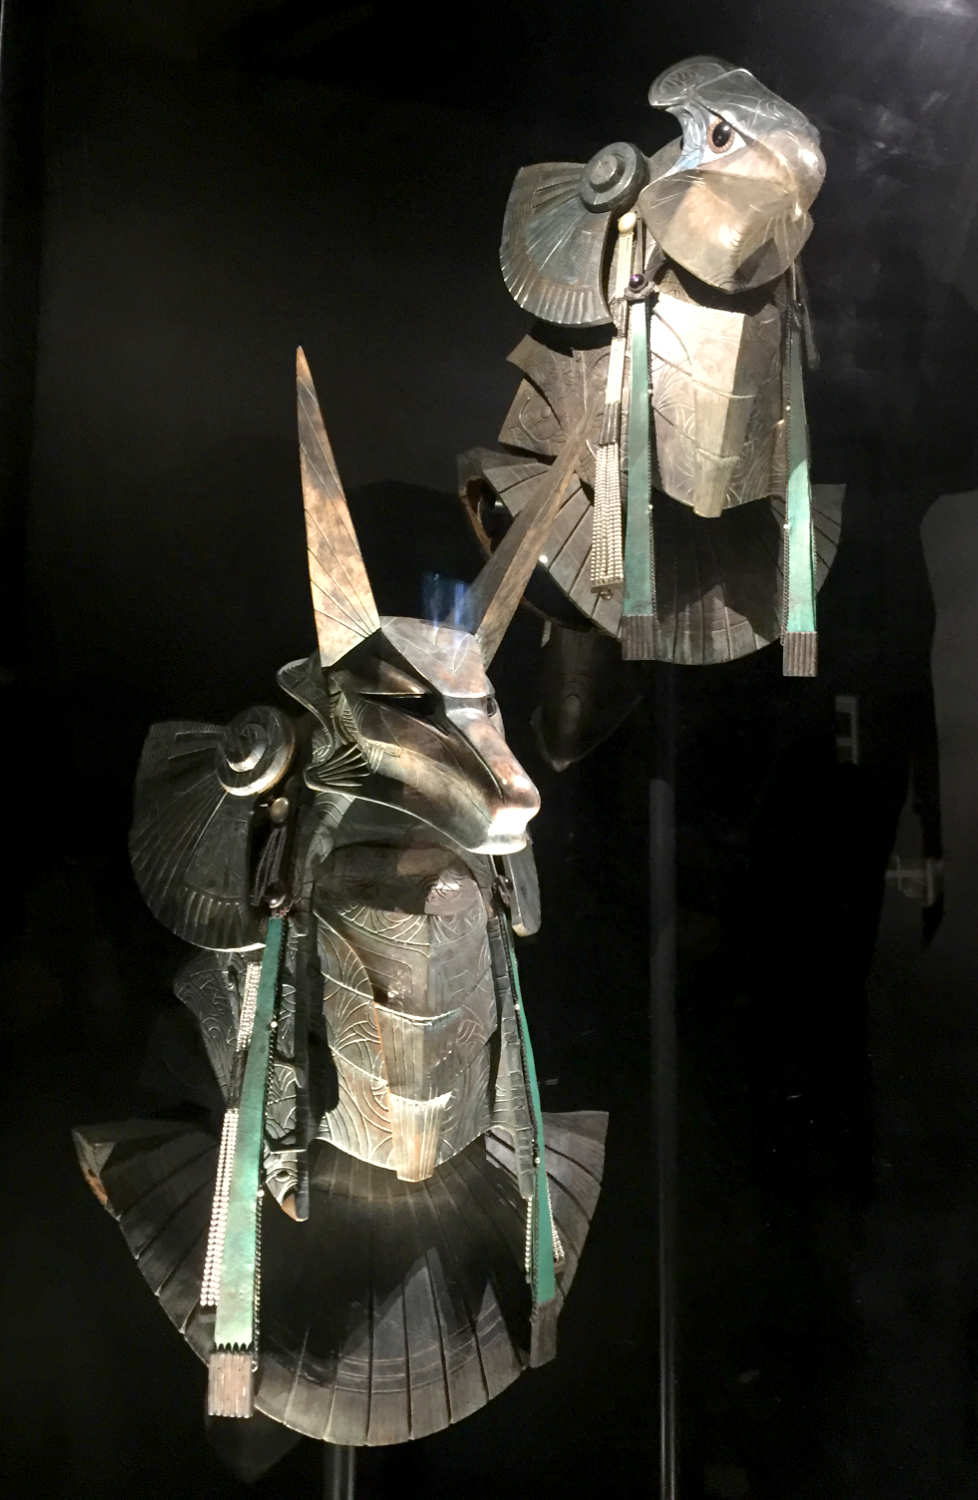 Masks from Stargate